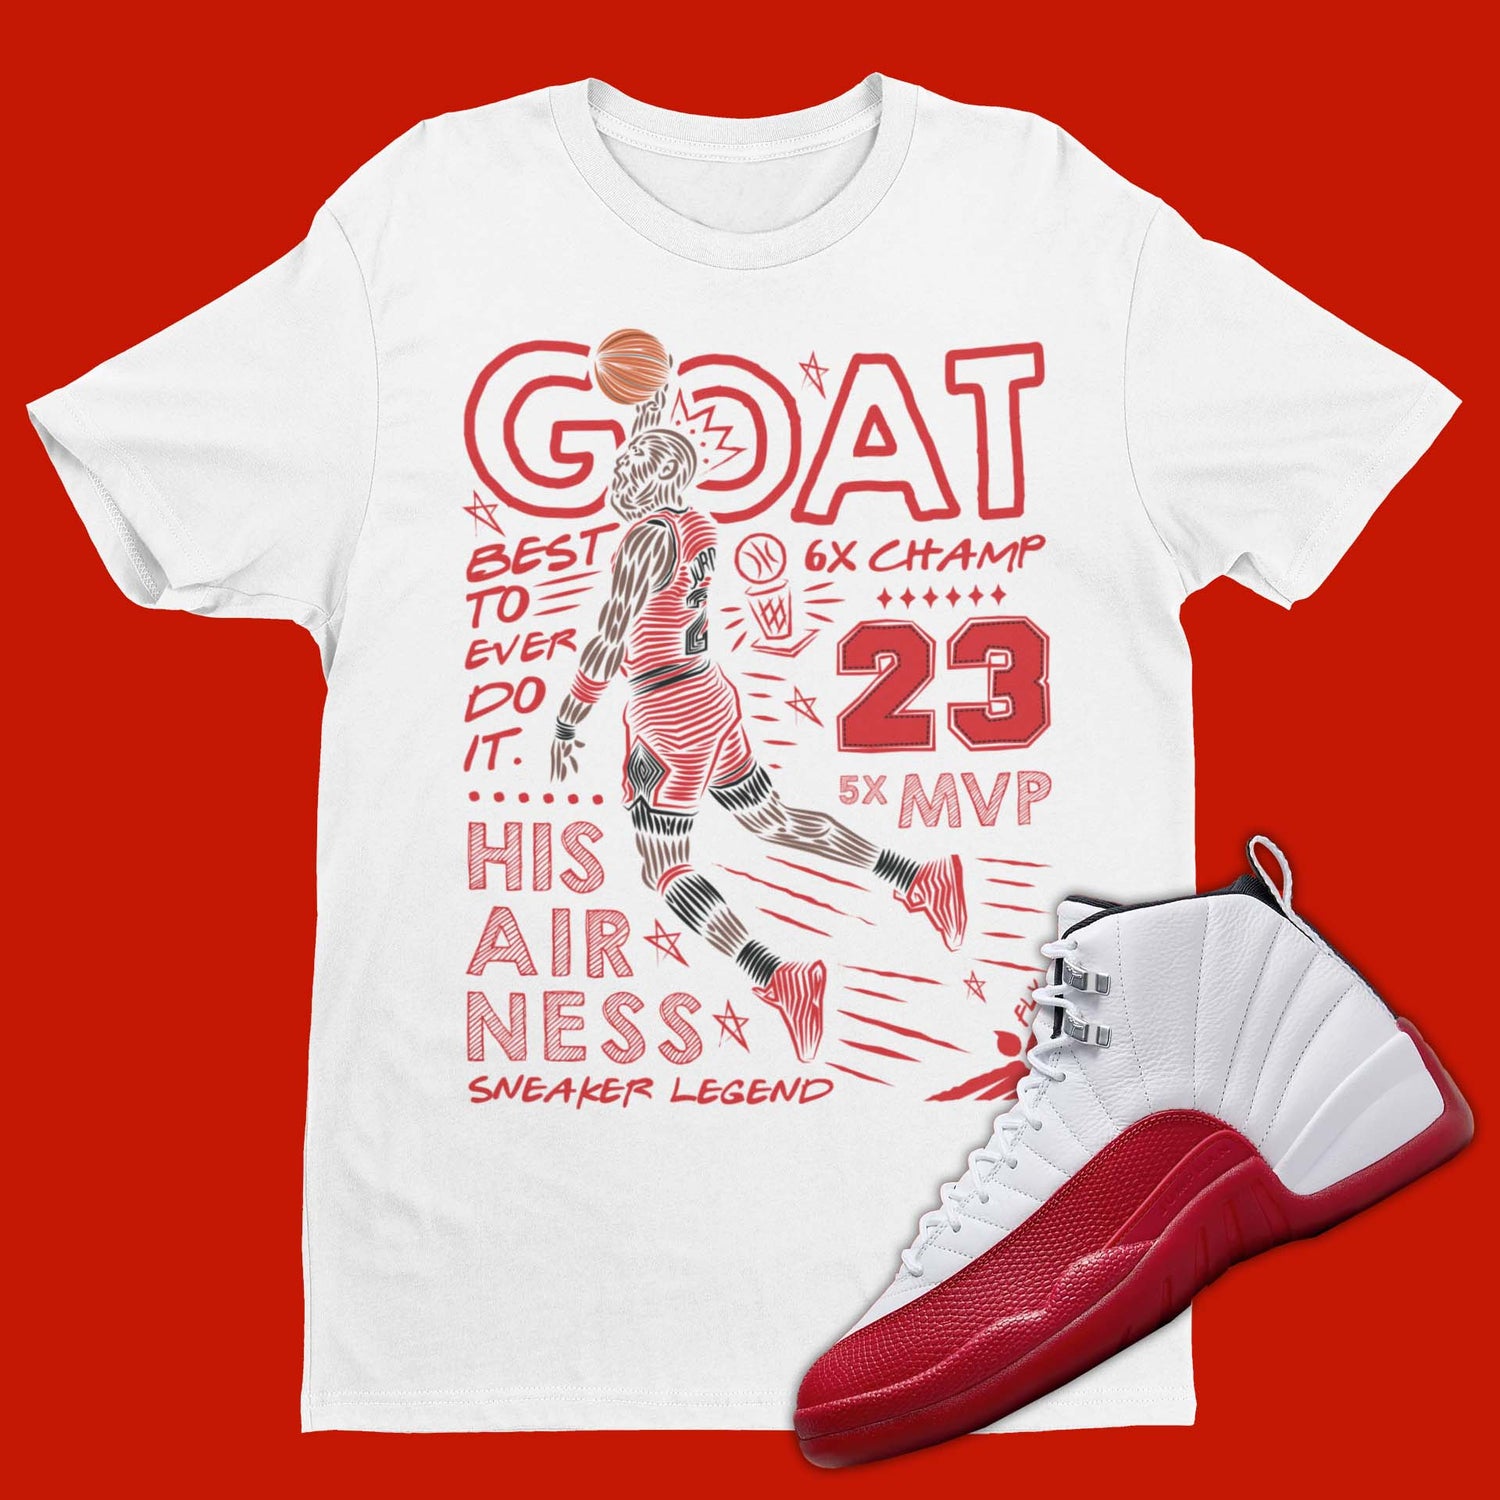 GOAT Air Jordan 12 Cherry Matching T-Shirt from SNKADX